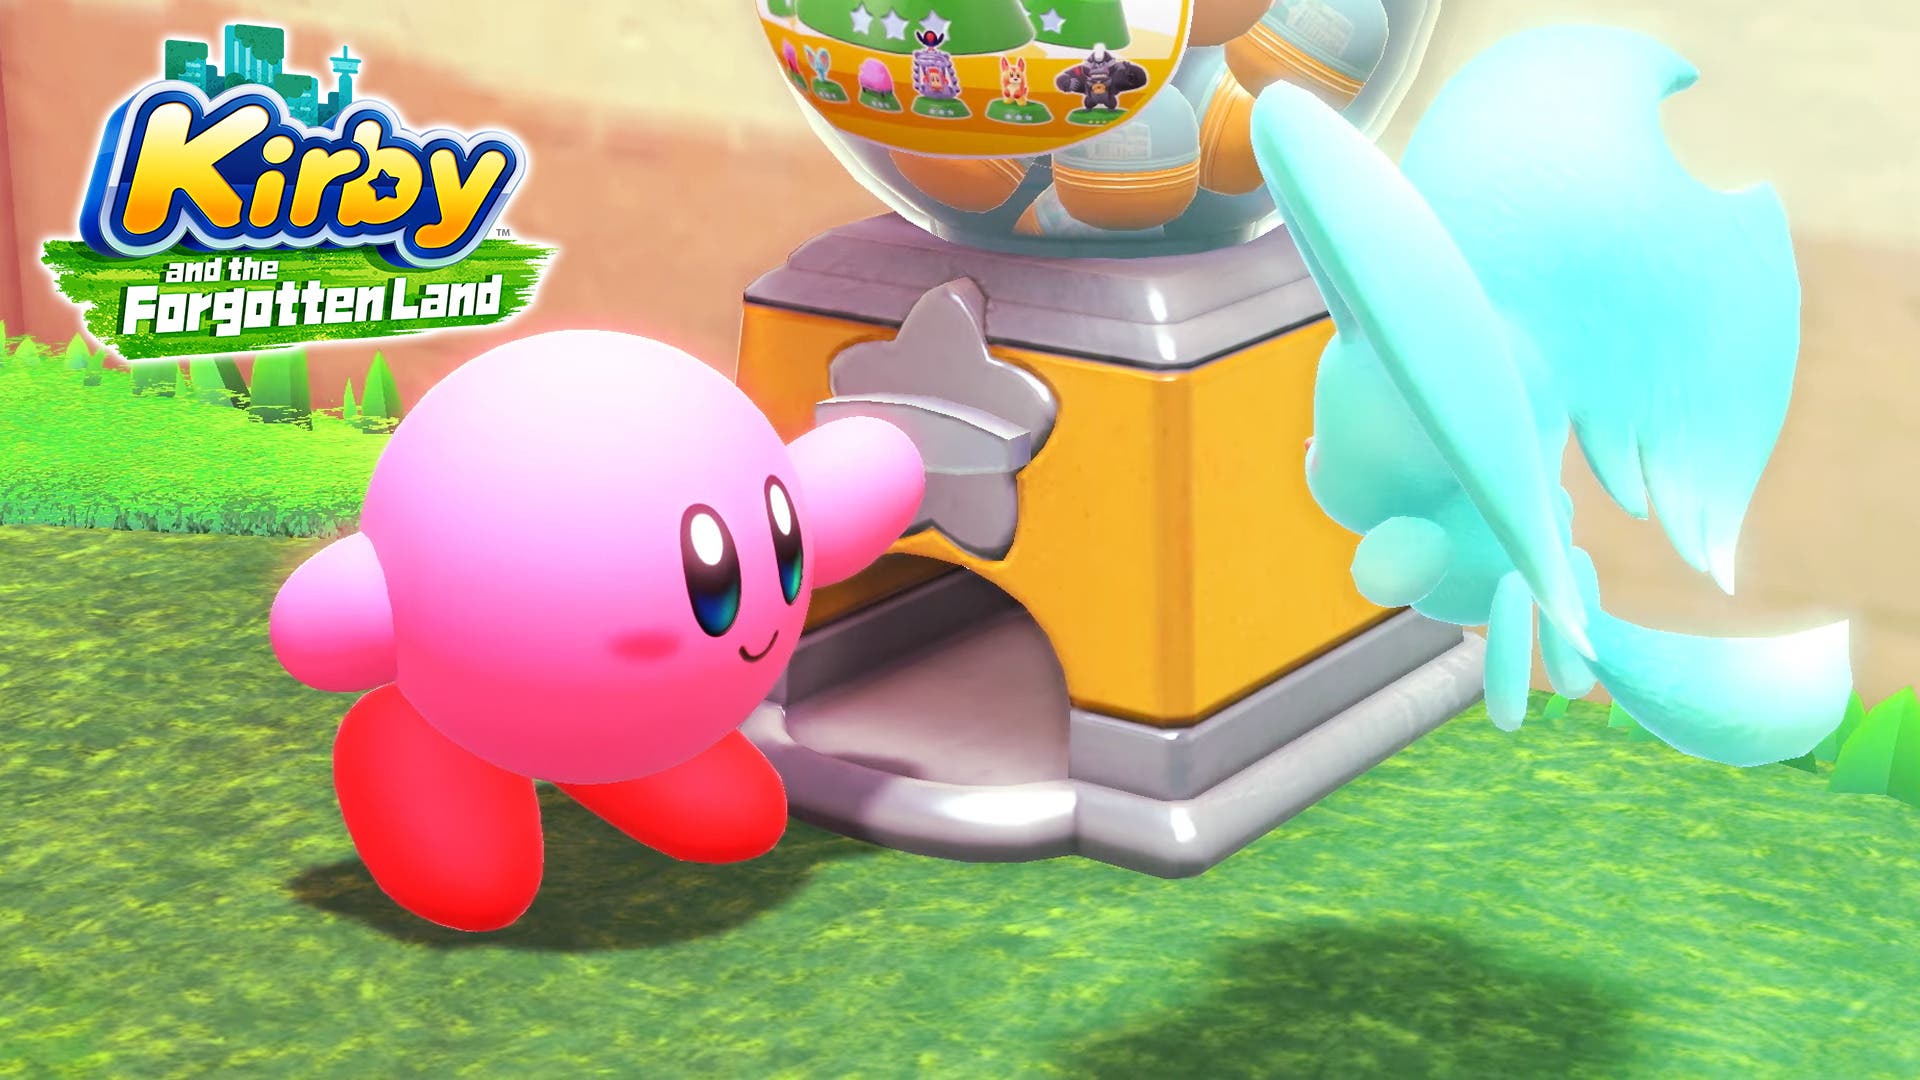 Kirby y la Tierra Olvidada : : Videojuegos